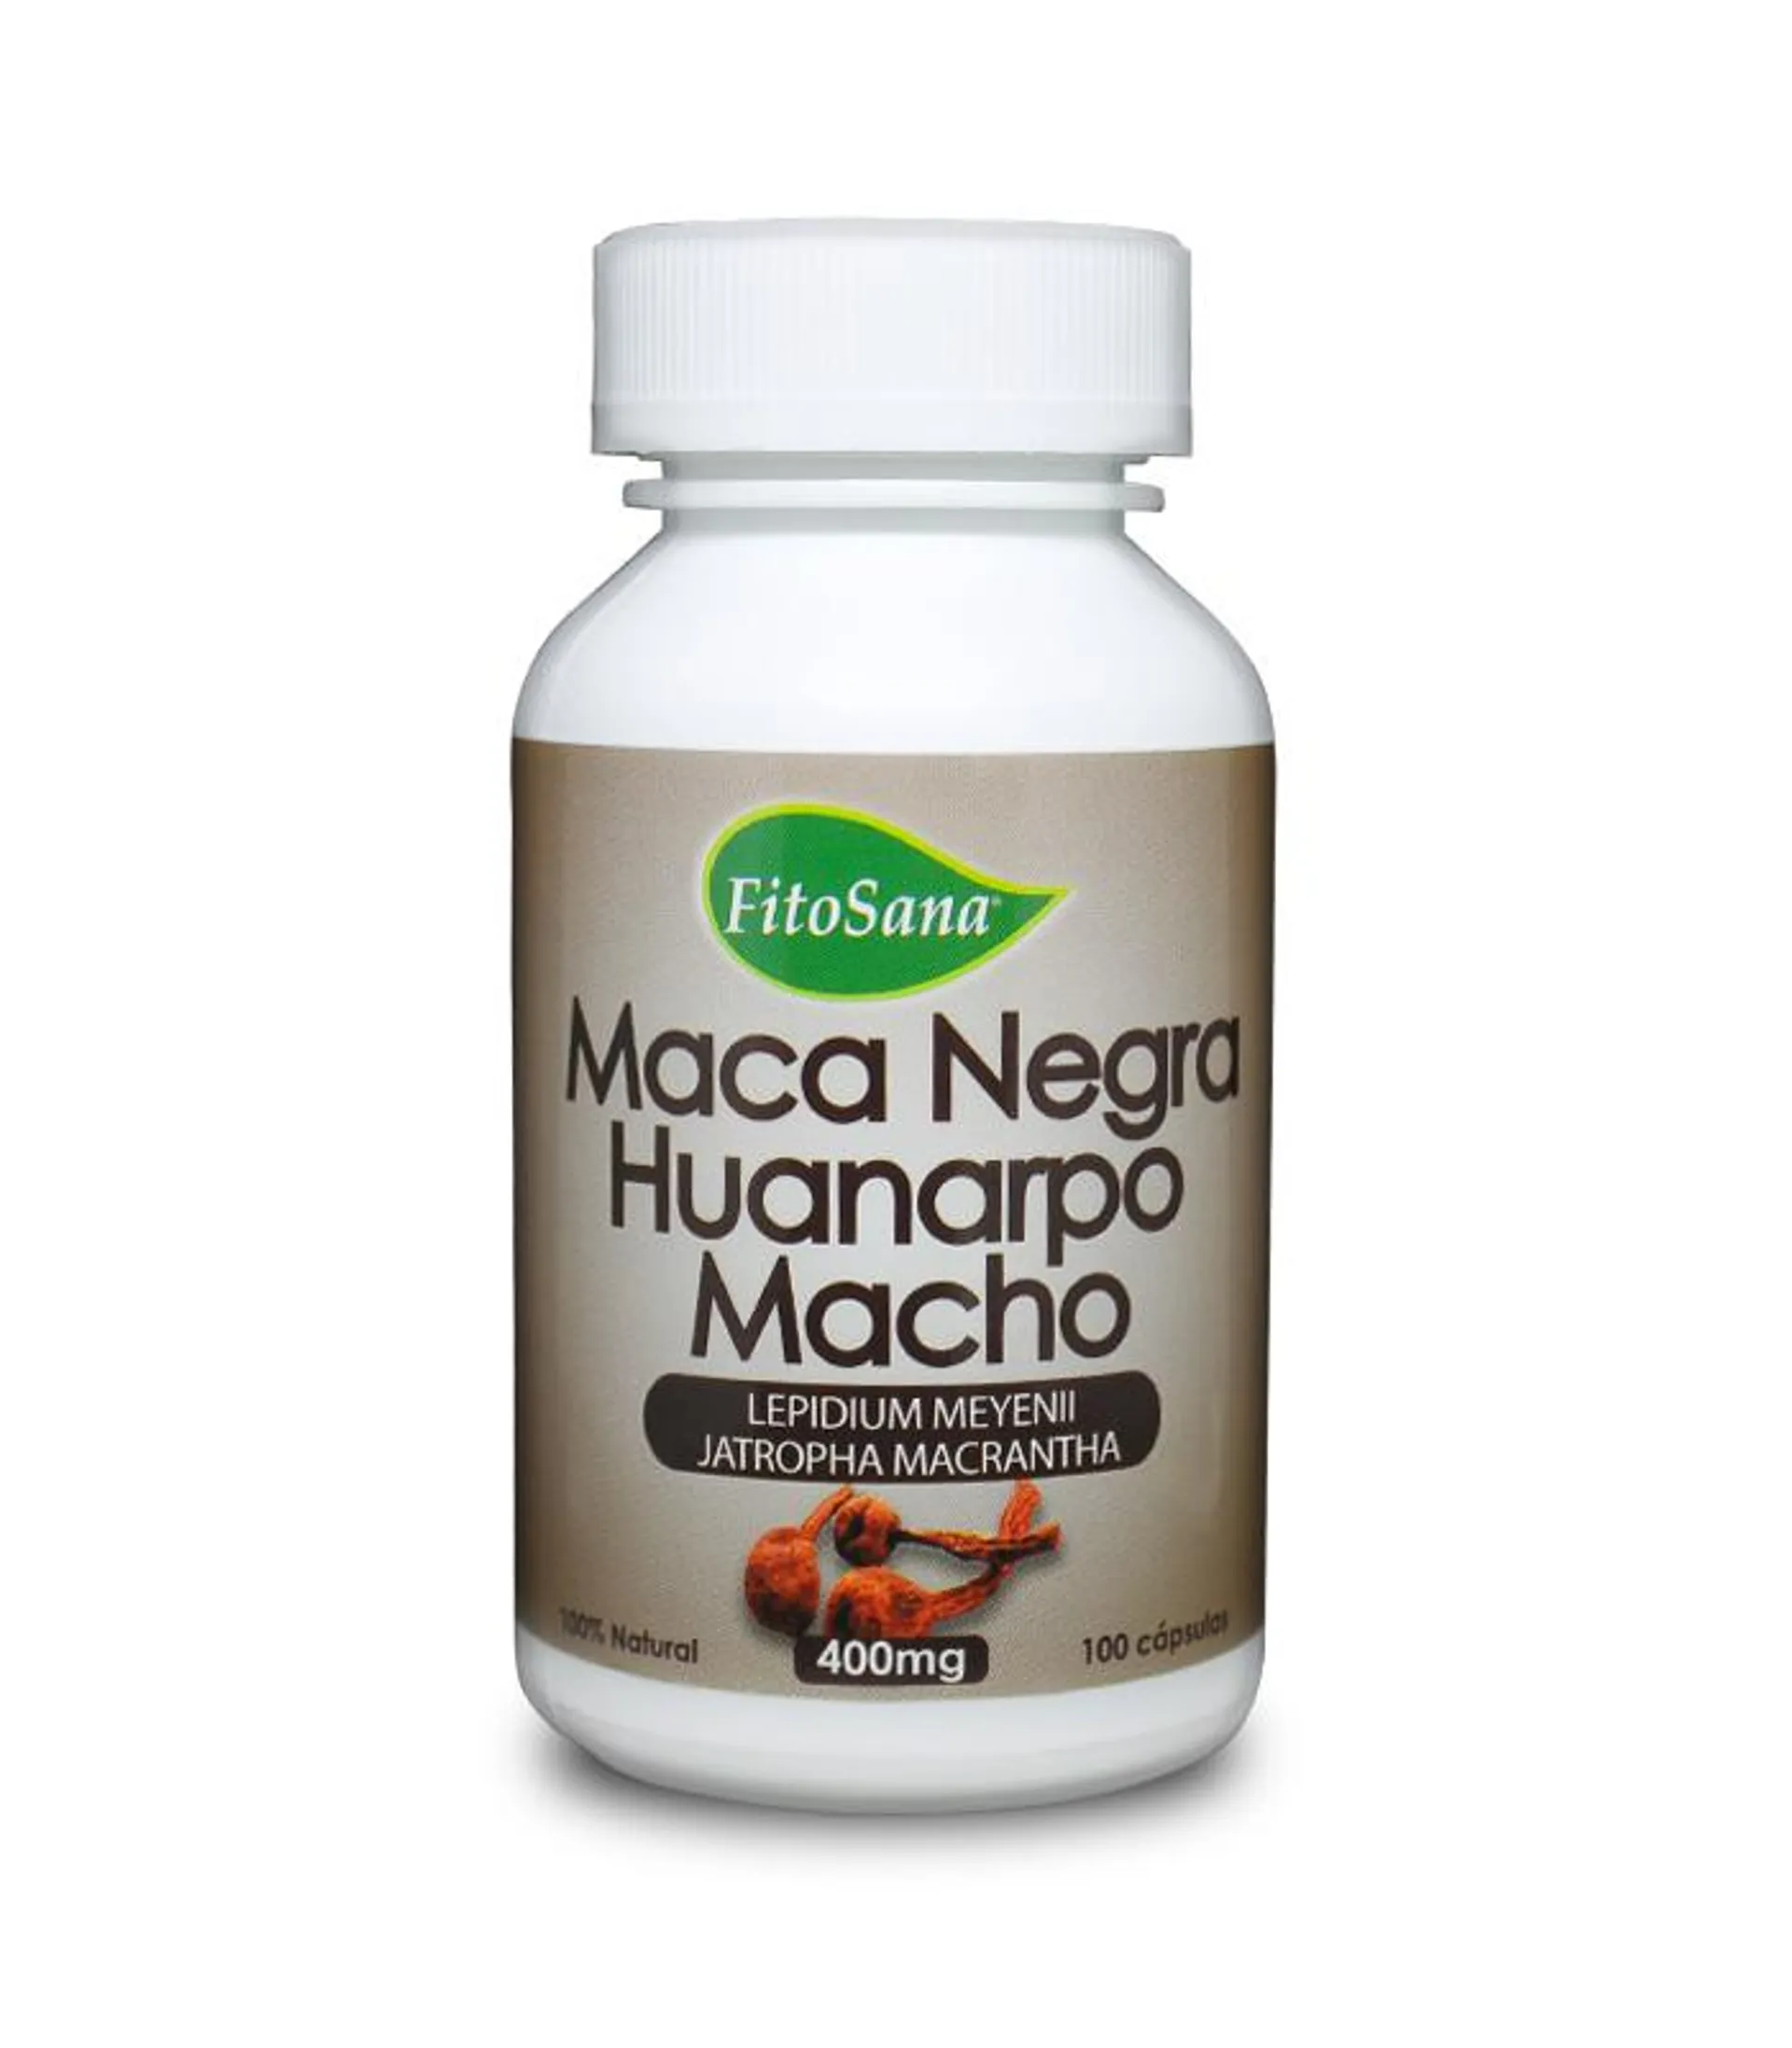 Maca Negra con Huanarpo Macho – 100 unidades